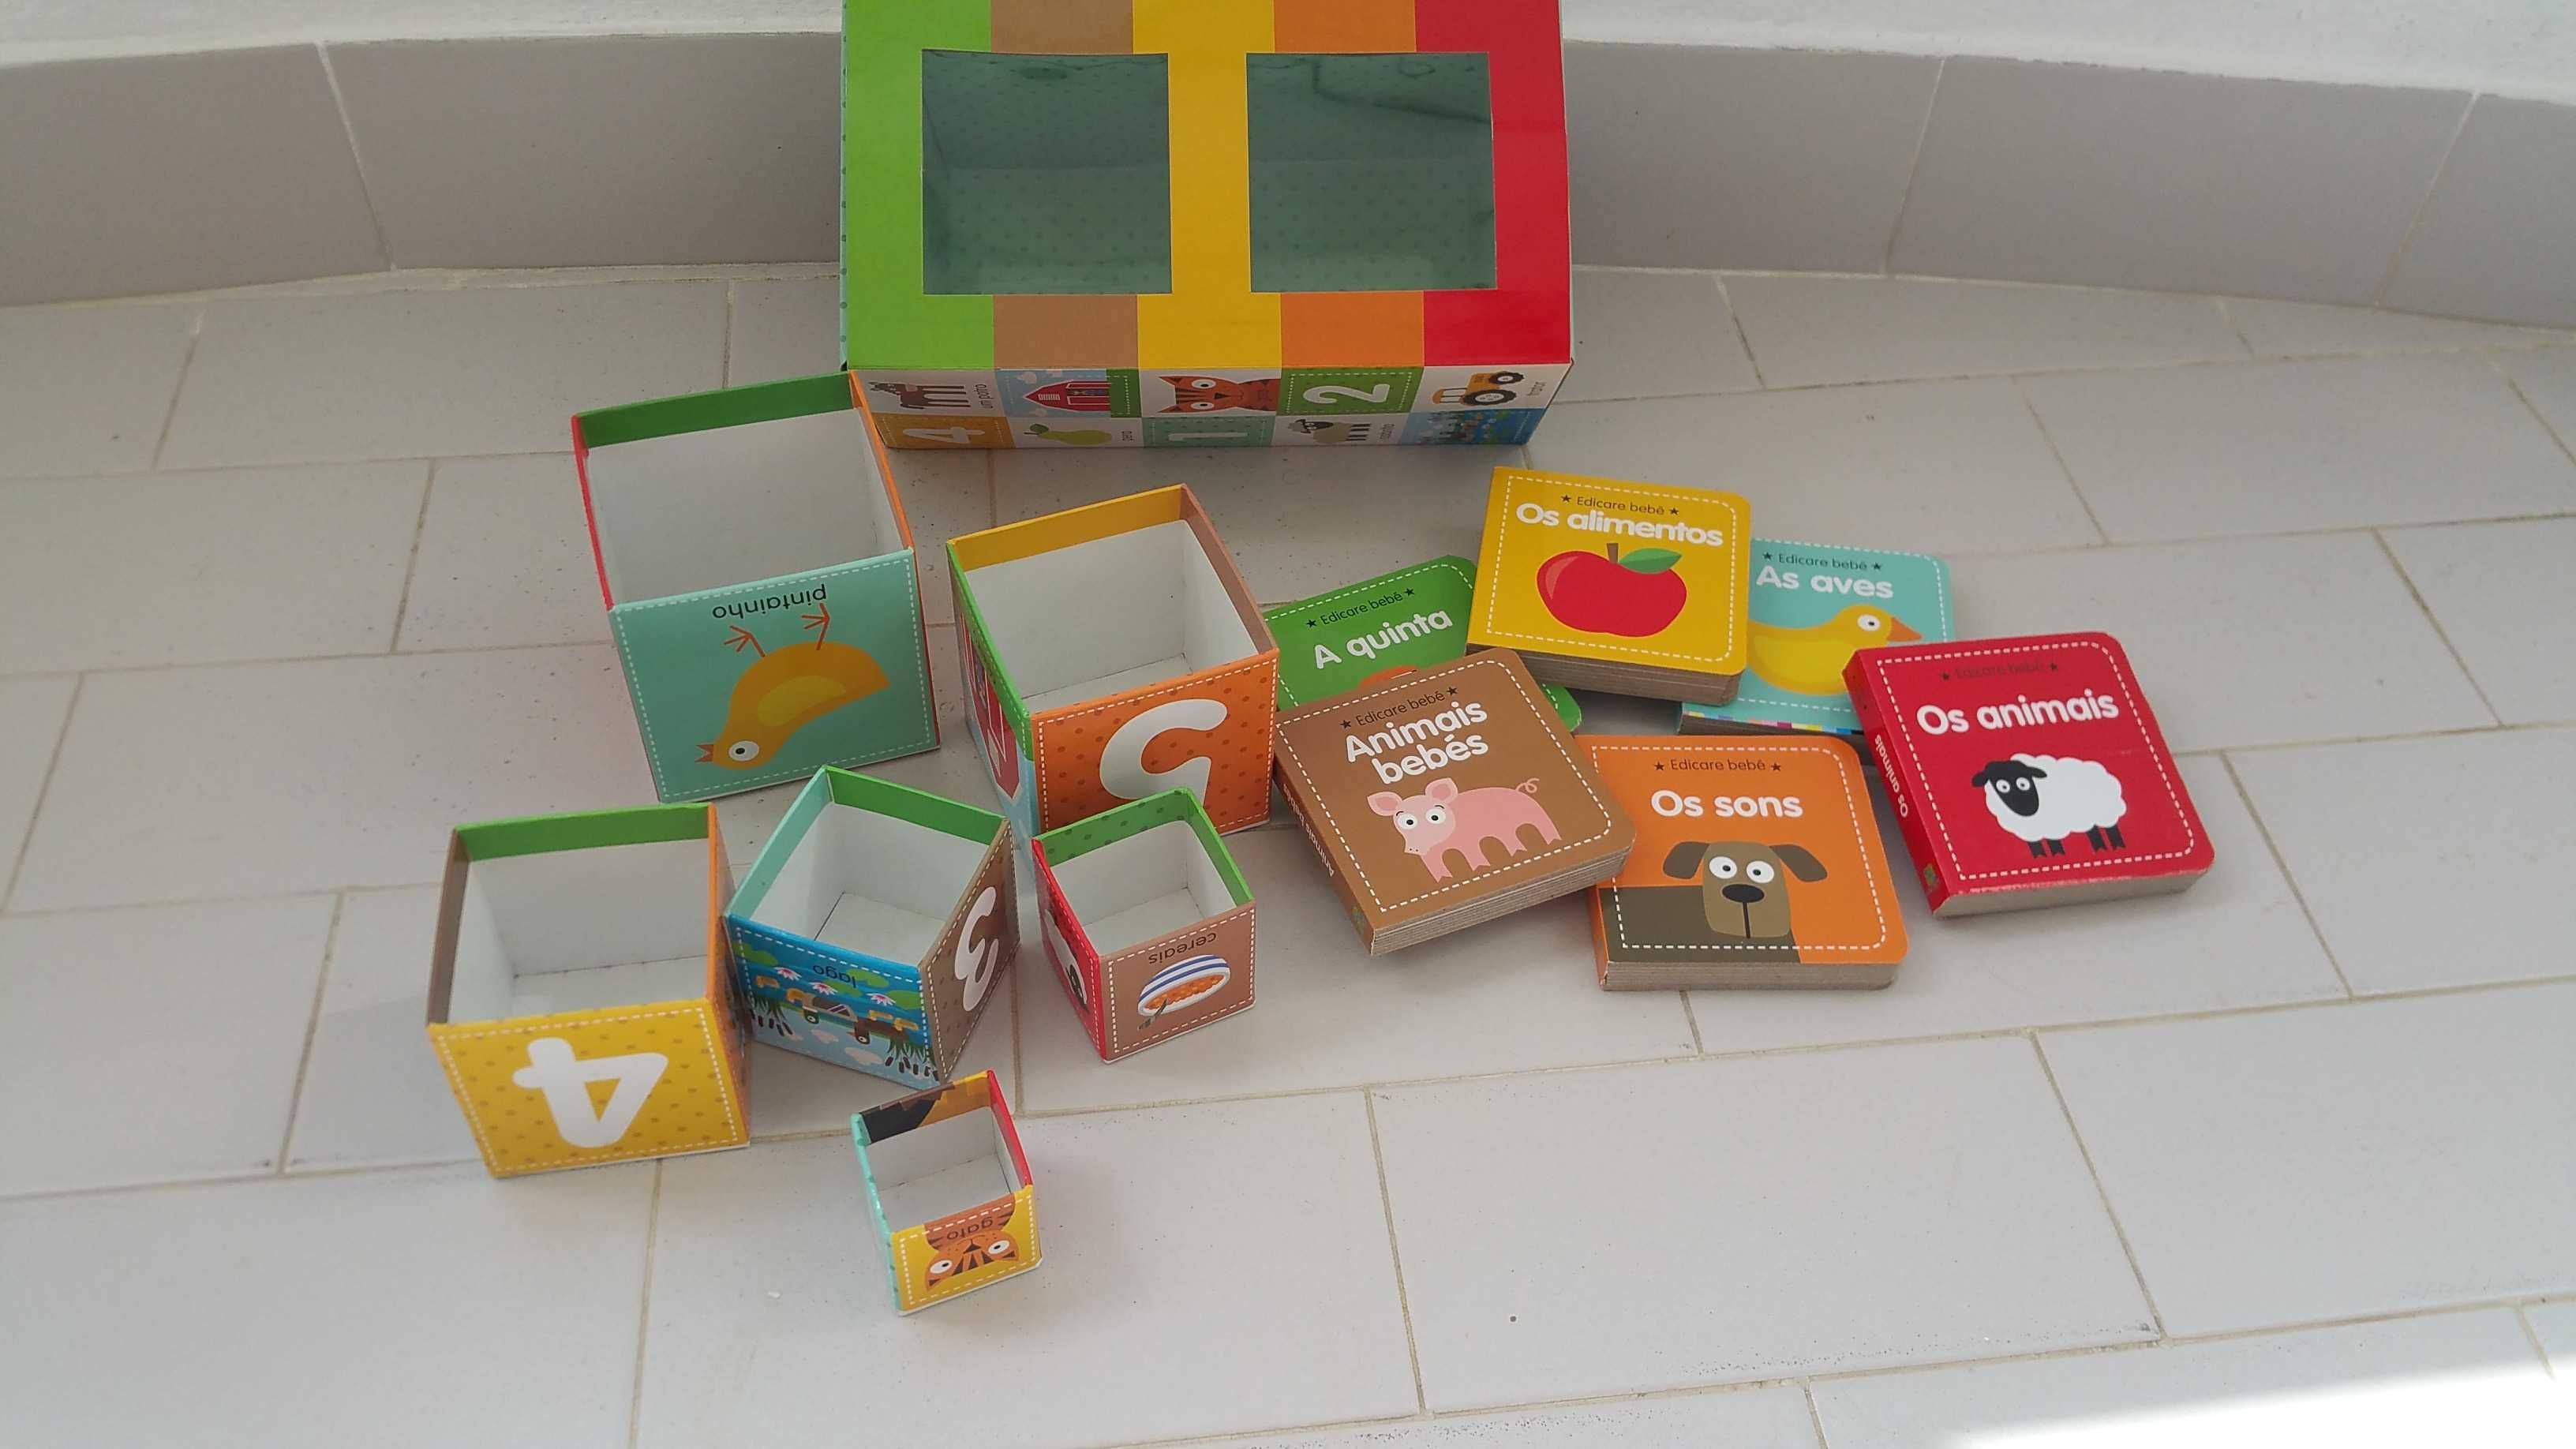 "A Quinta"- livros de cartão e cubos de empilhar